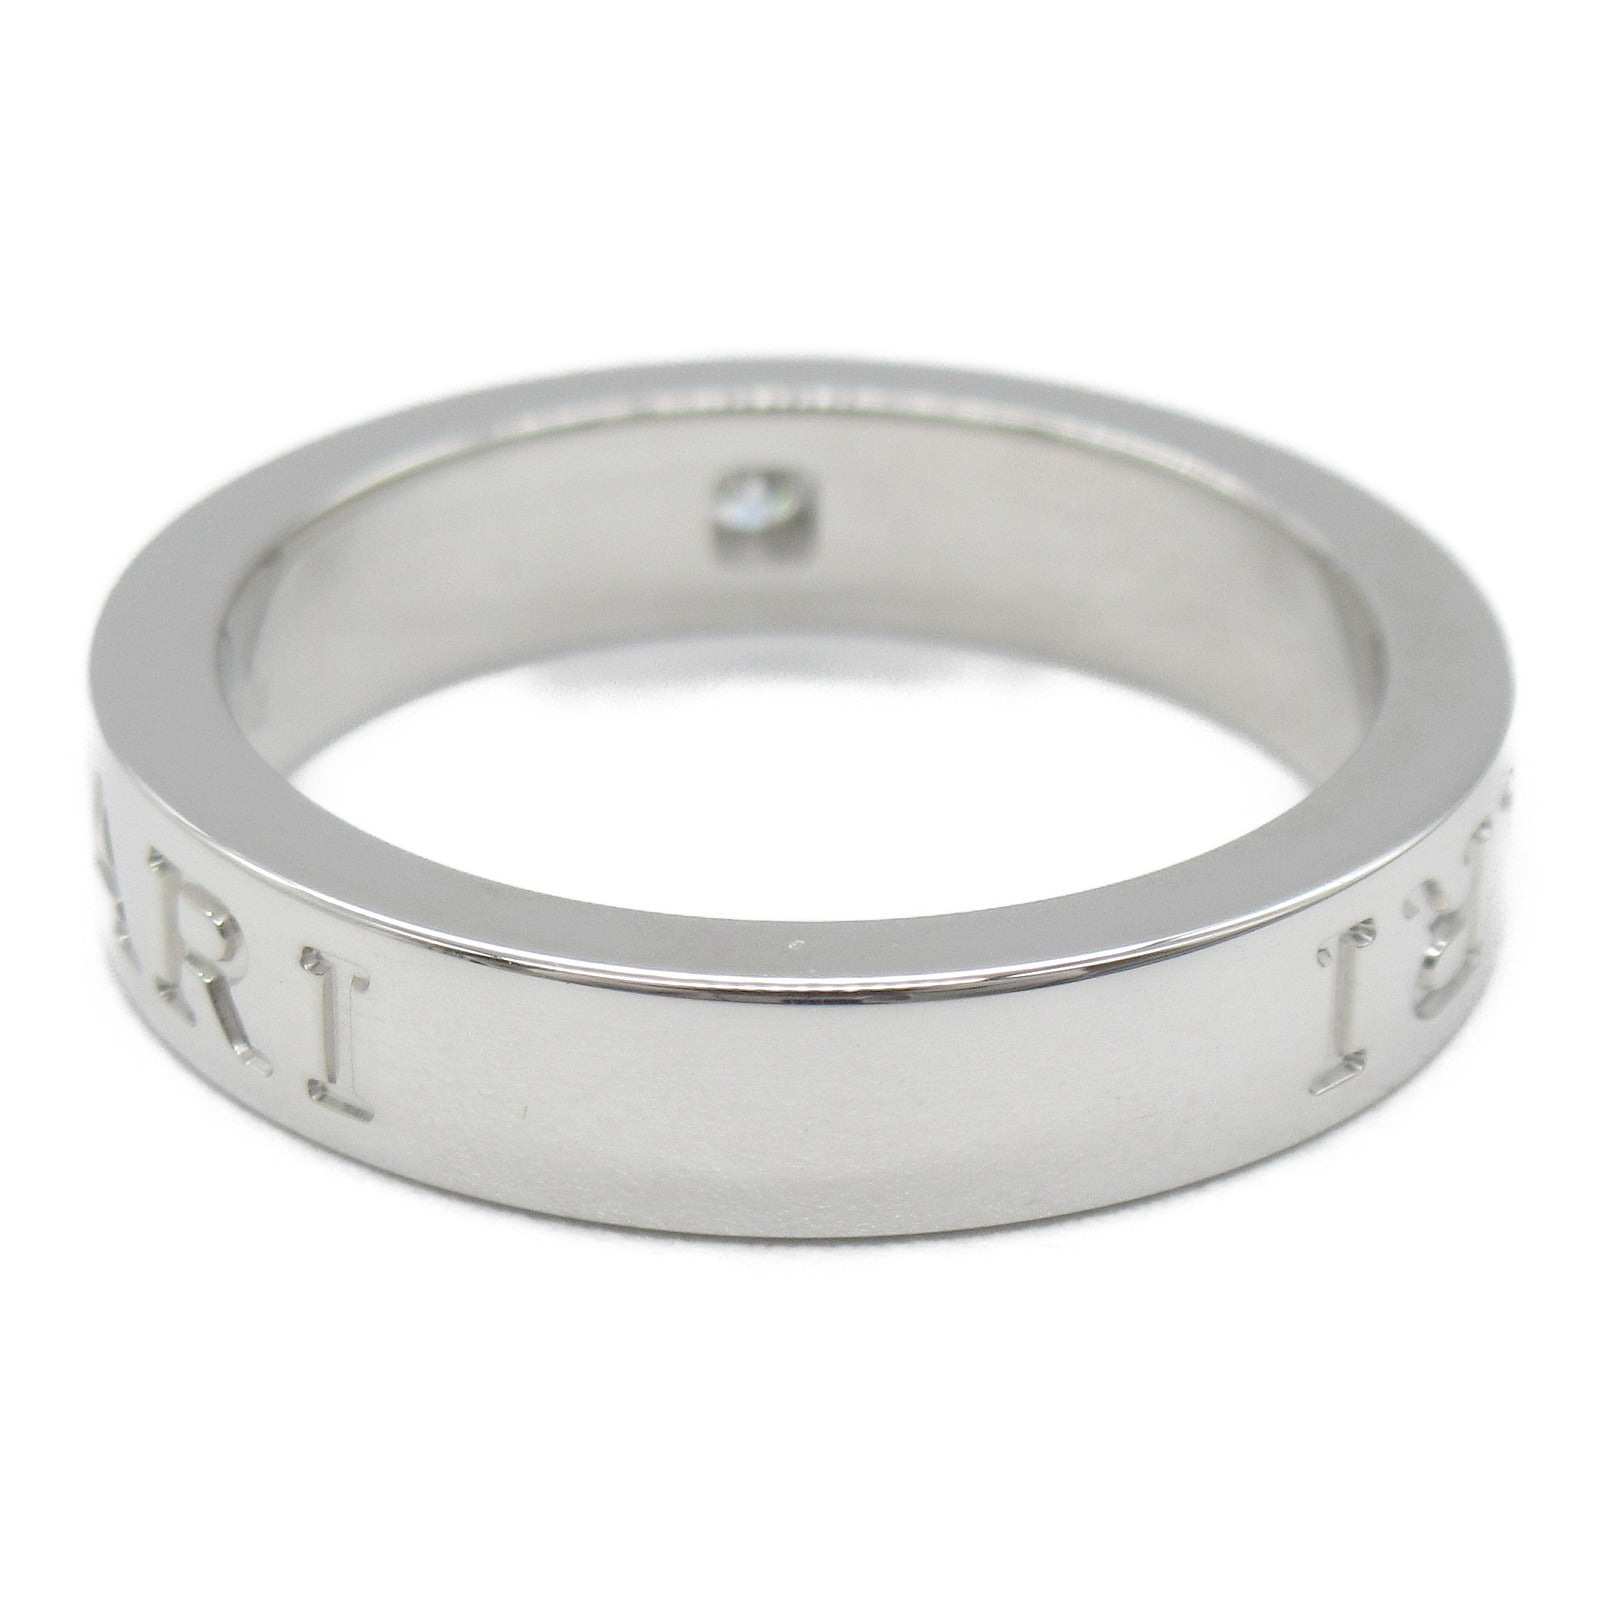 Bulgari BVLGARI Double Logo 1P Diamond B-zero1 Beezel Ring Ring Ring Ring Jewelry K18WG (White G) Diamond  Clearance